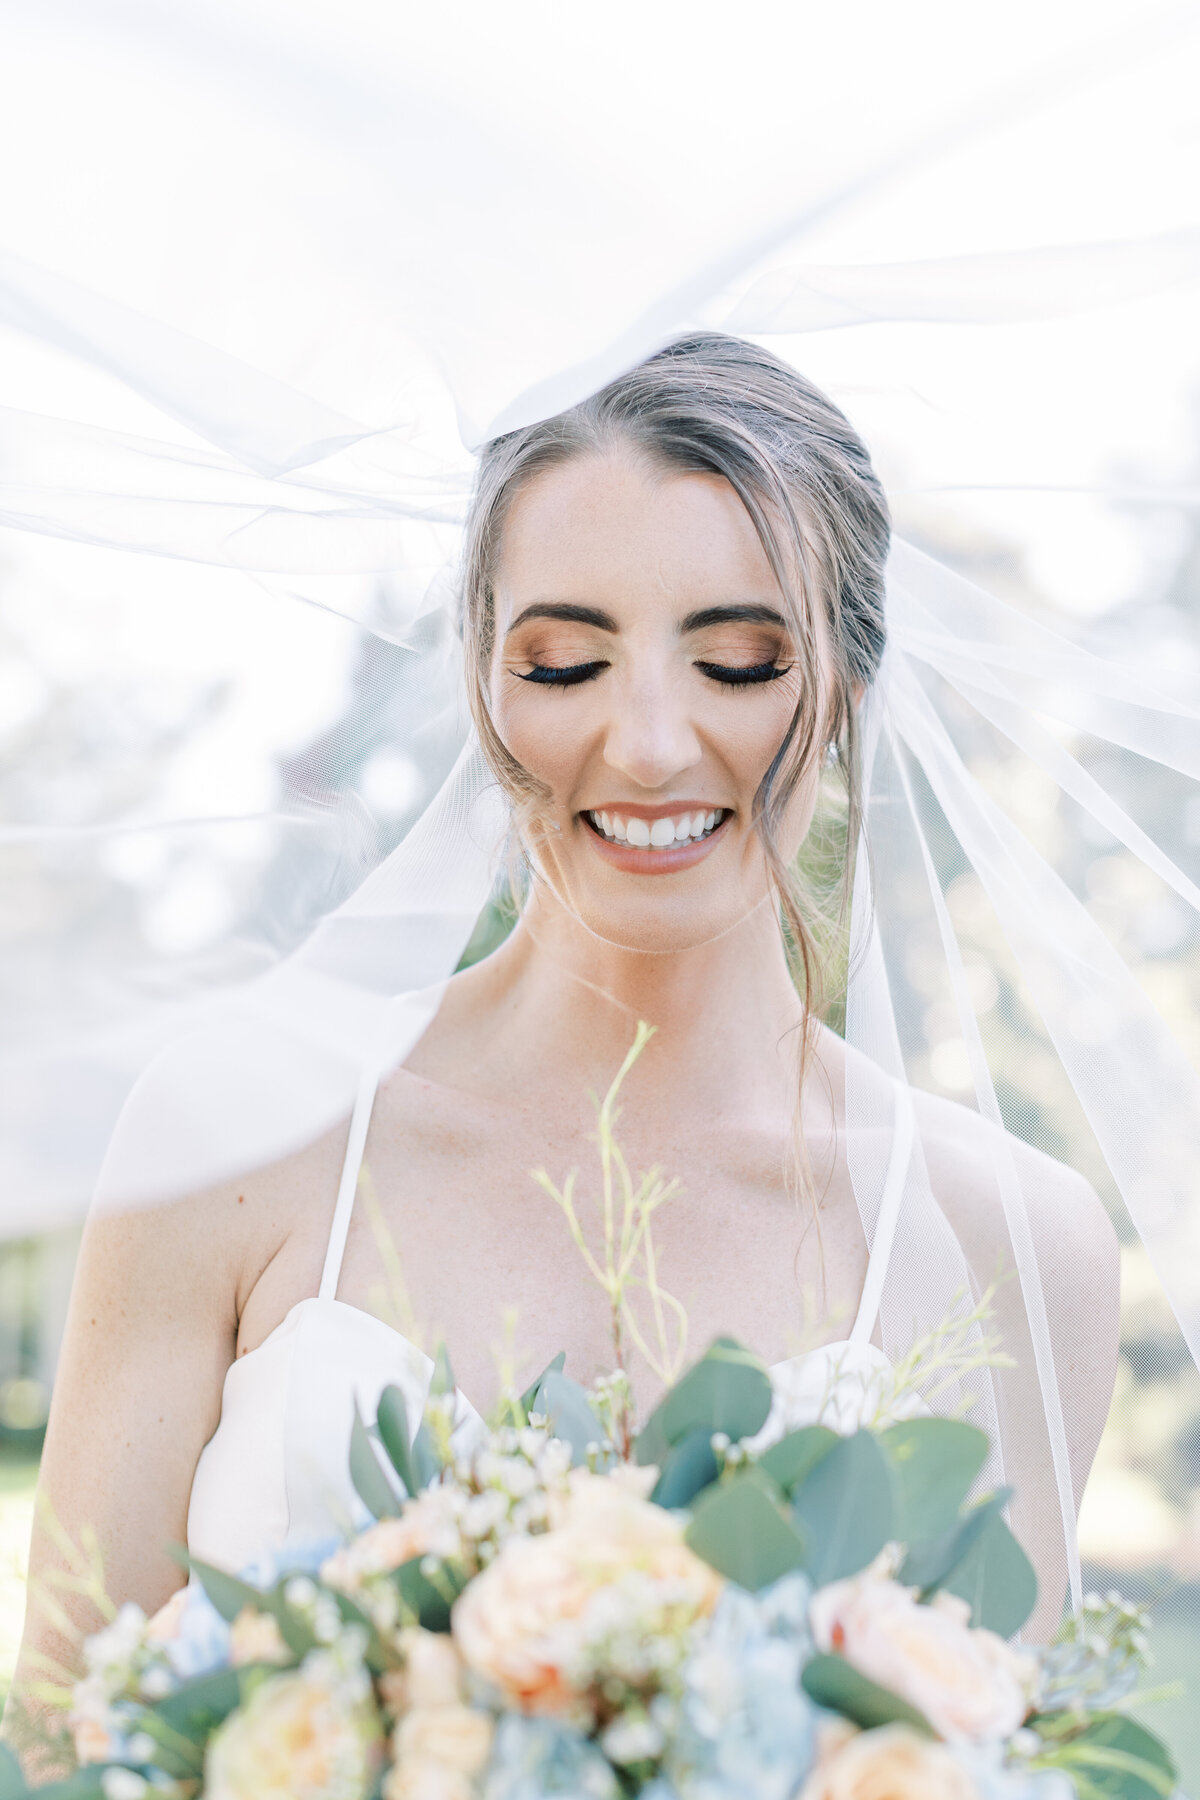 A bride laughs under the veil.